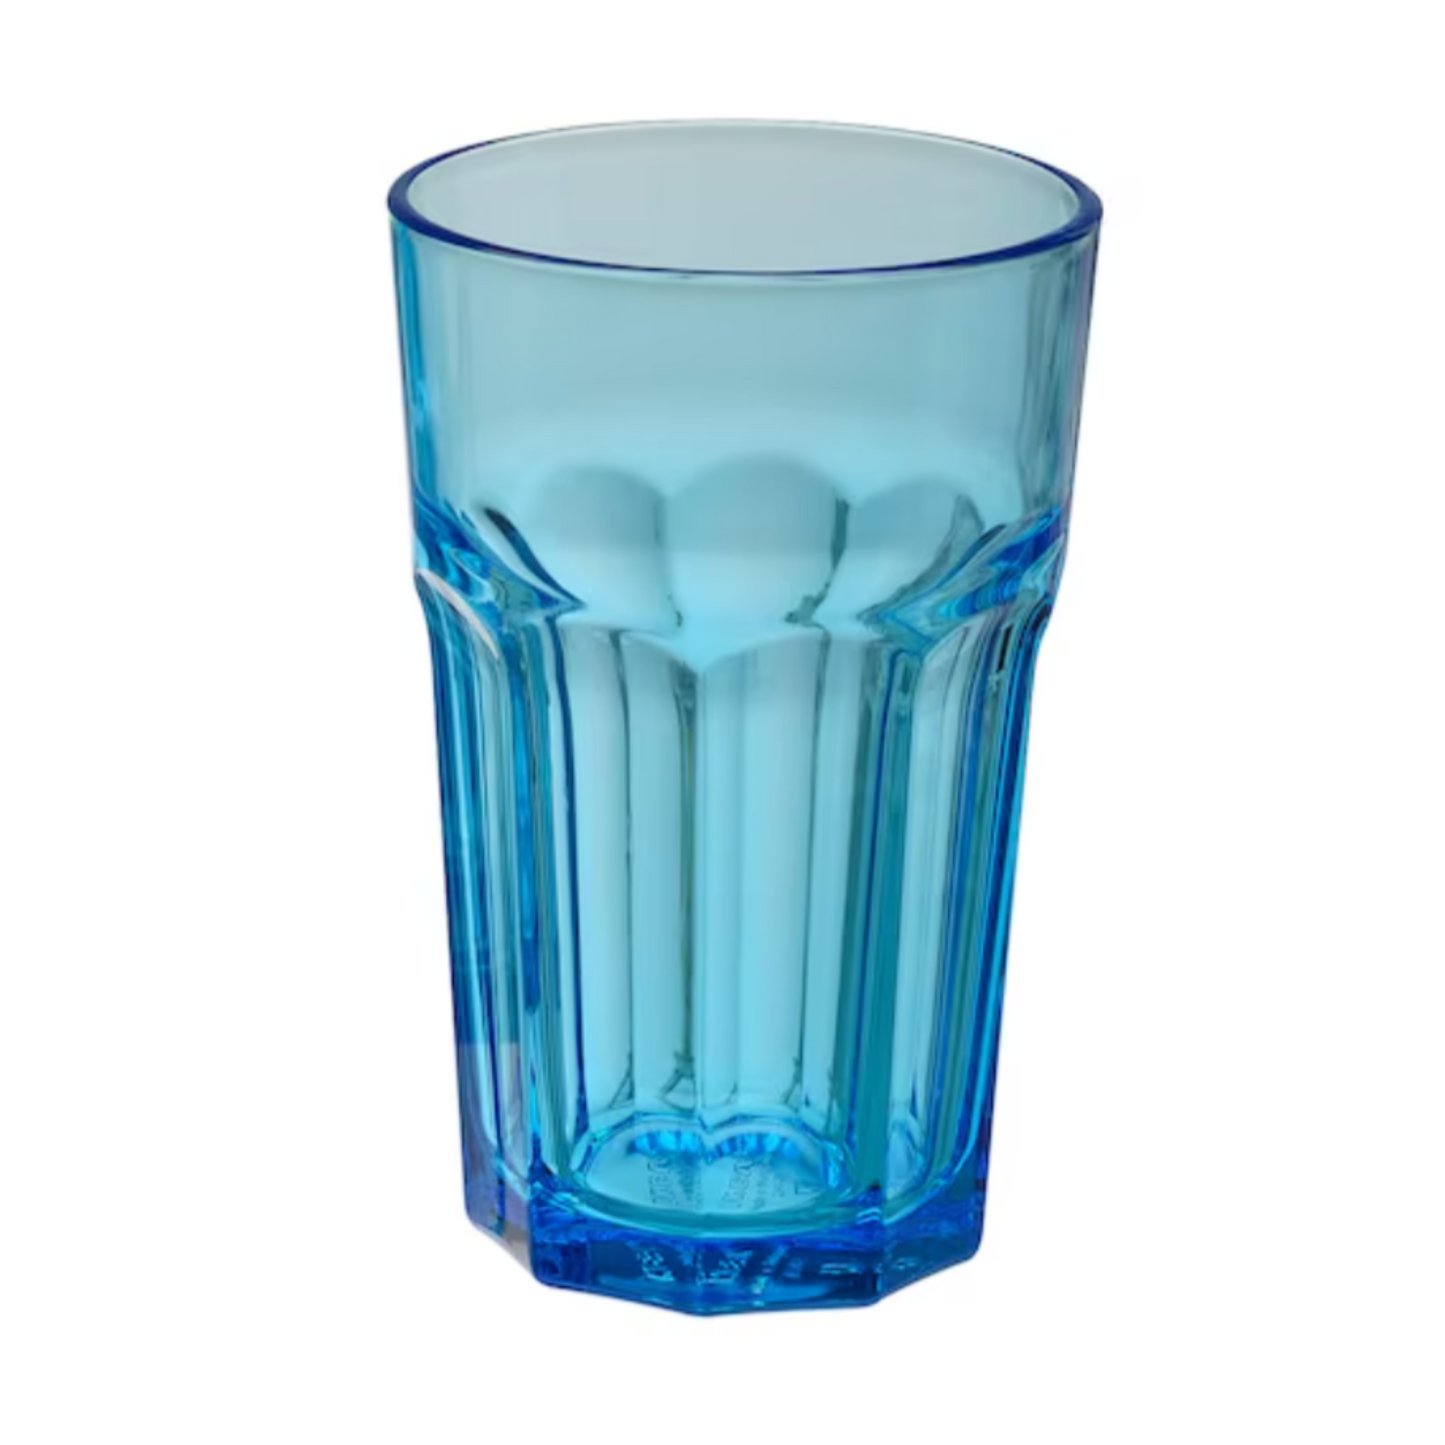 IKEA Pokal Drinking Glass 35cl, Blue (6577832984641)